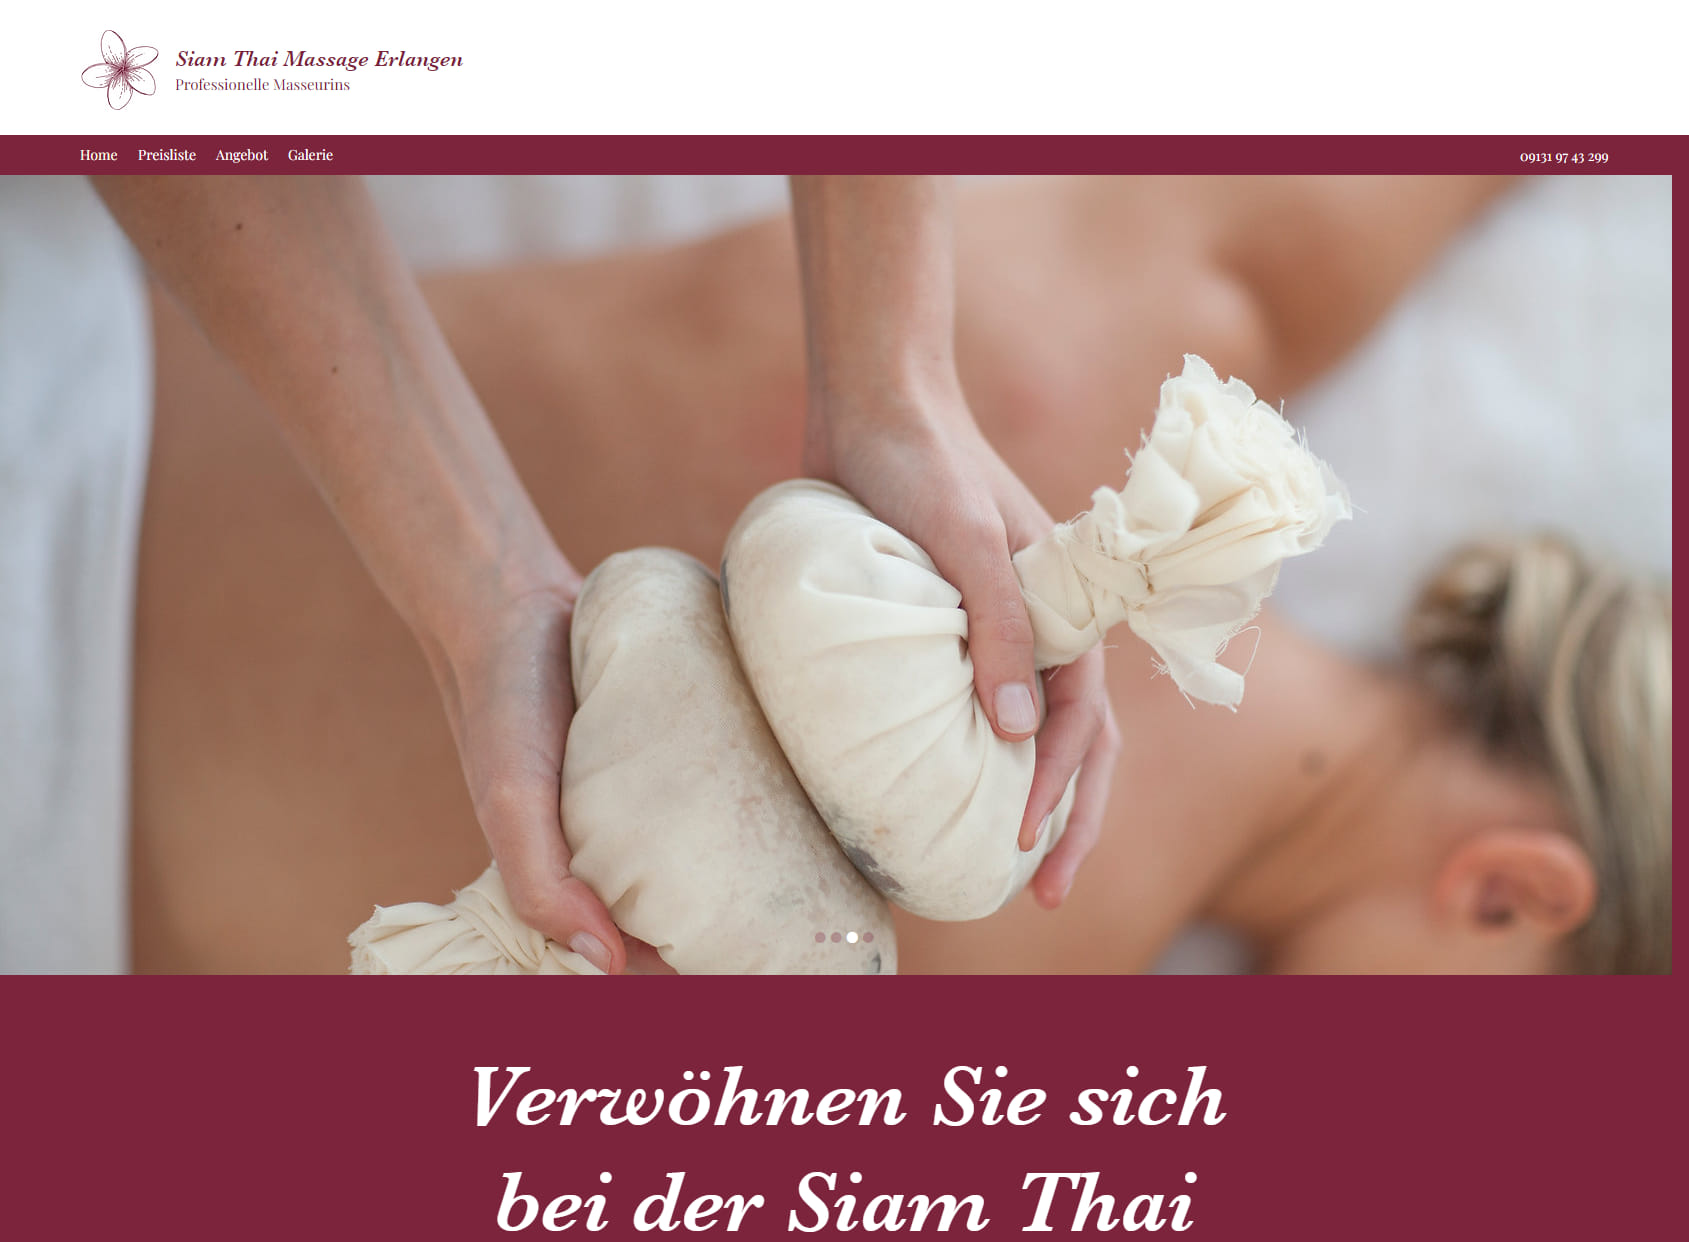 Siam Thai Massage Erlangen